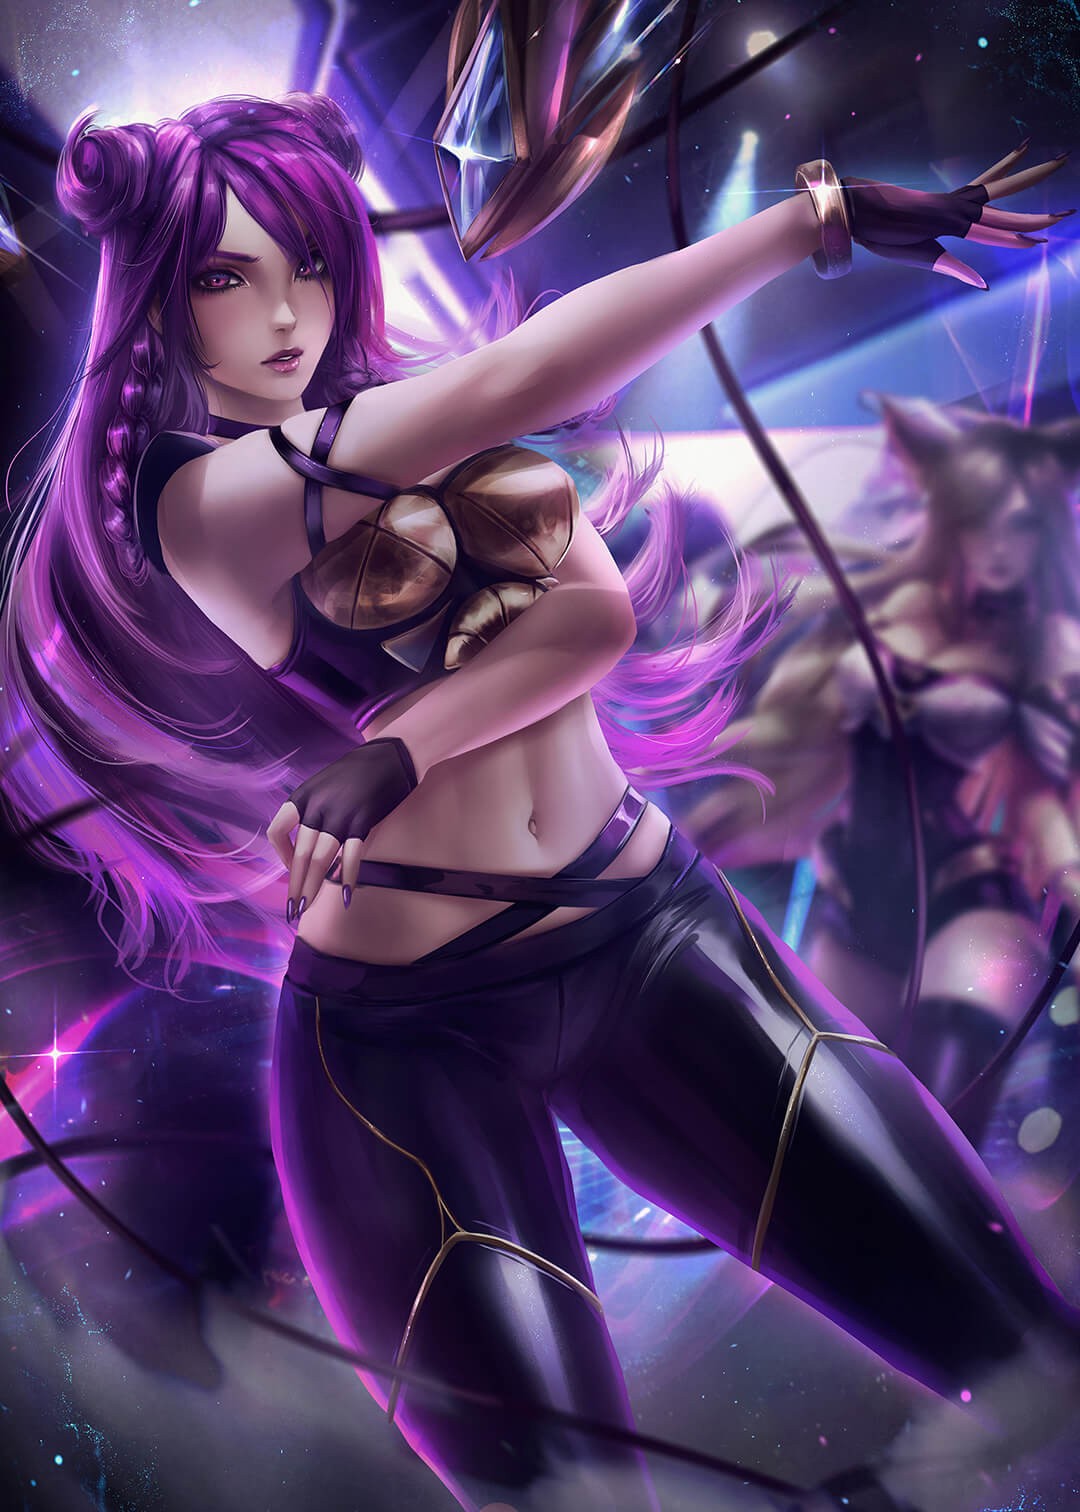 LOL英雄联盟卡莎美图，KDA女团卡莎紫色头发紧身皮裤真迷人！